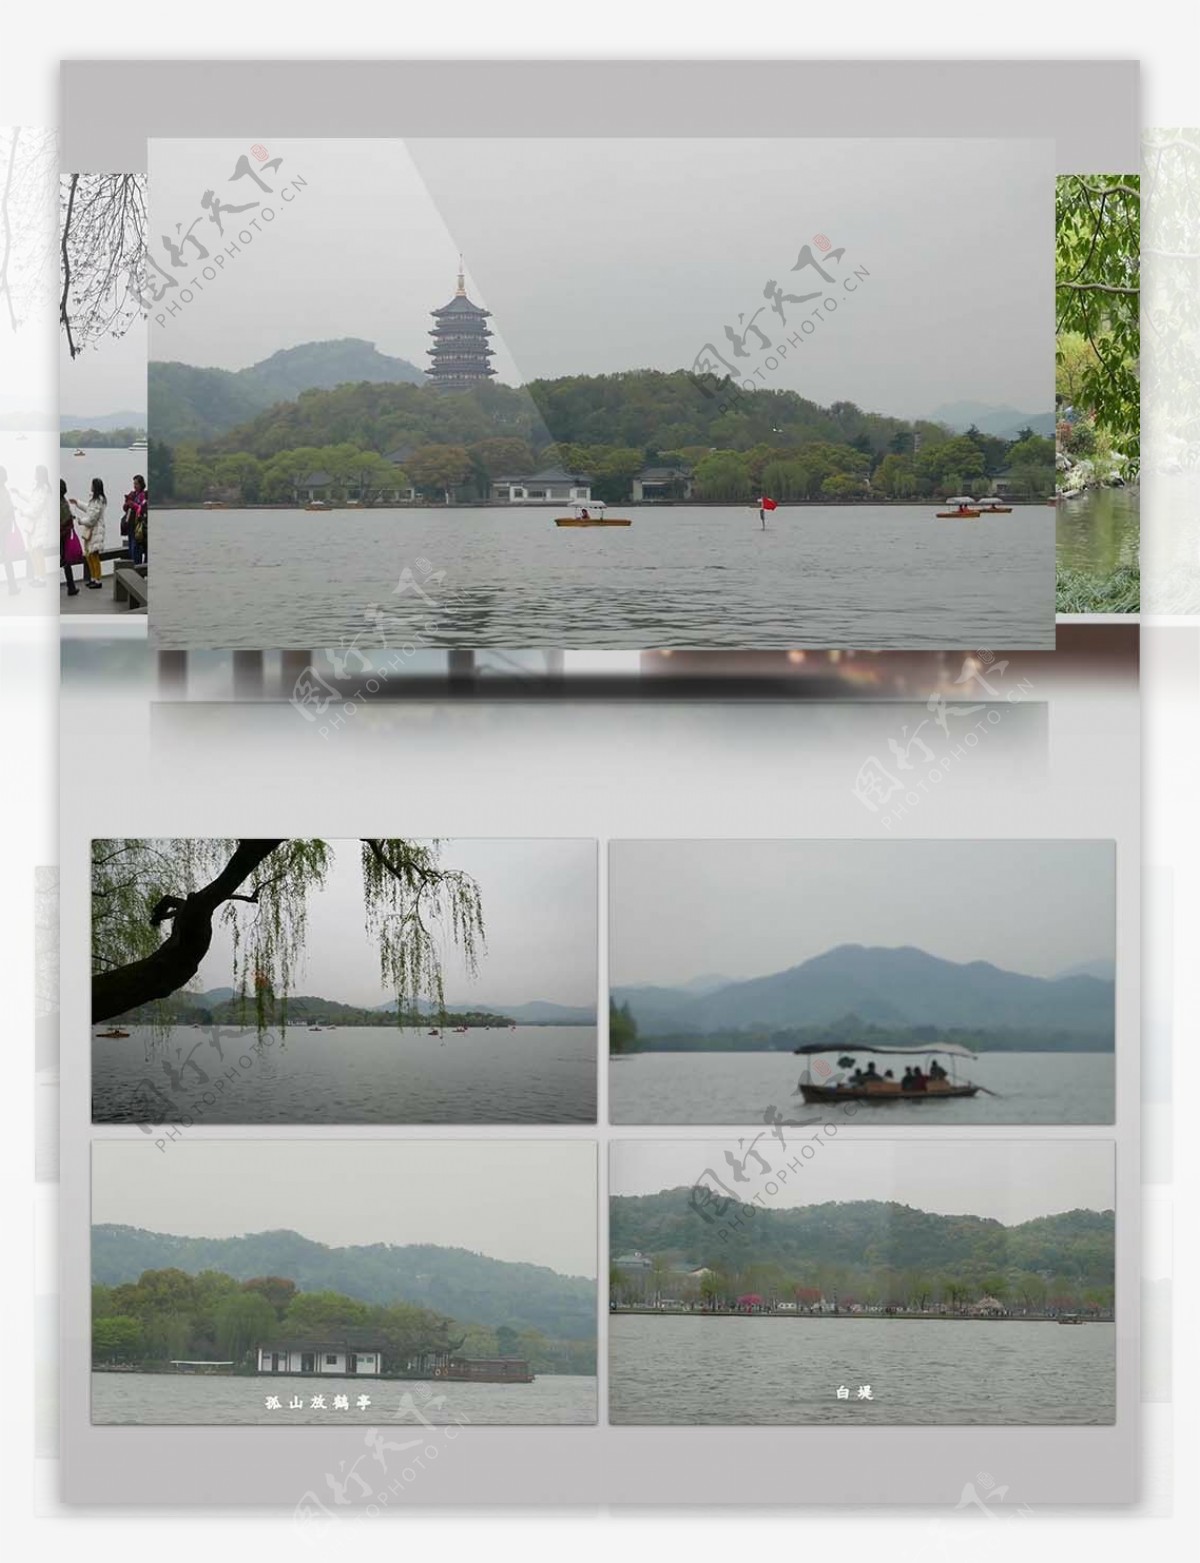 4K超清实拍雨江南西湖宣传视频